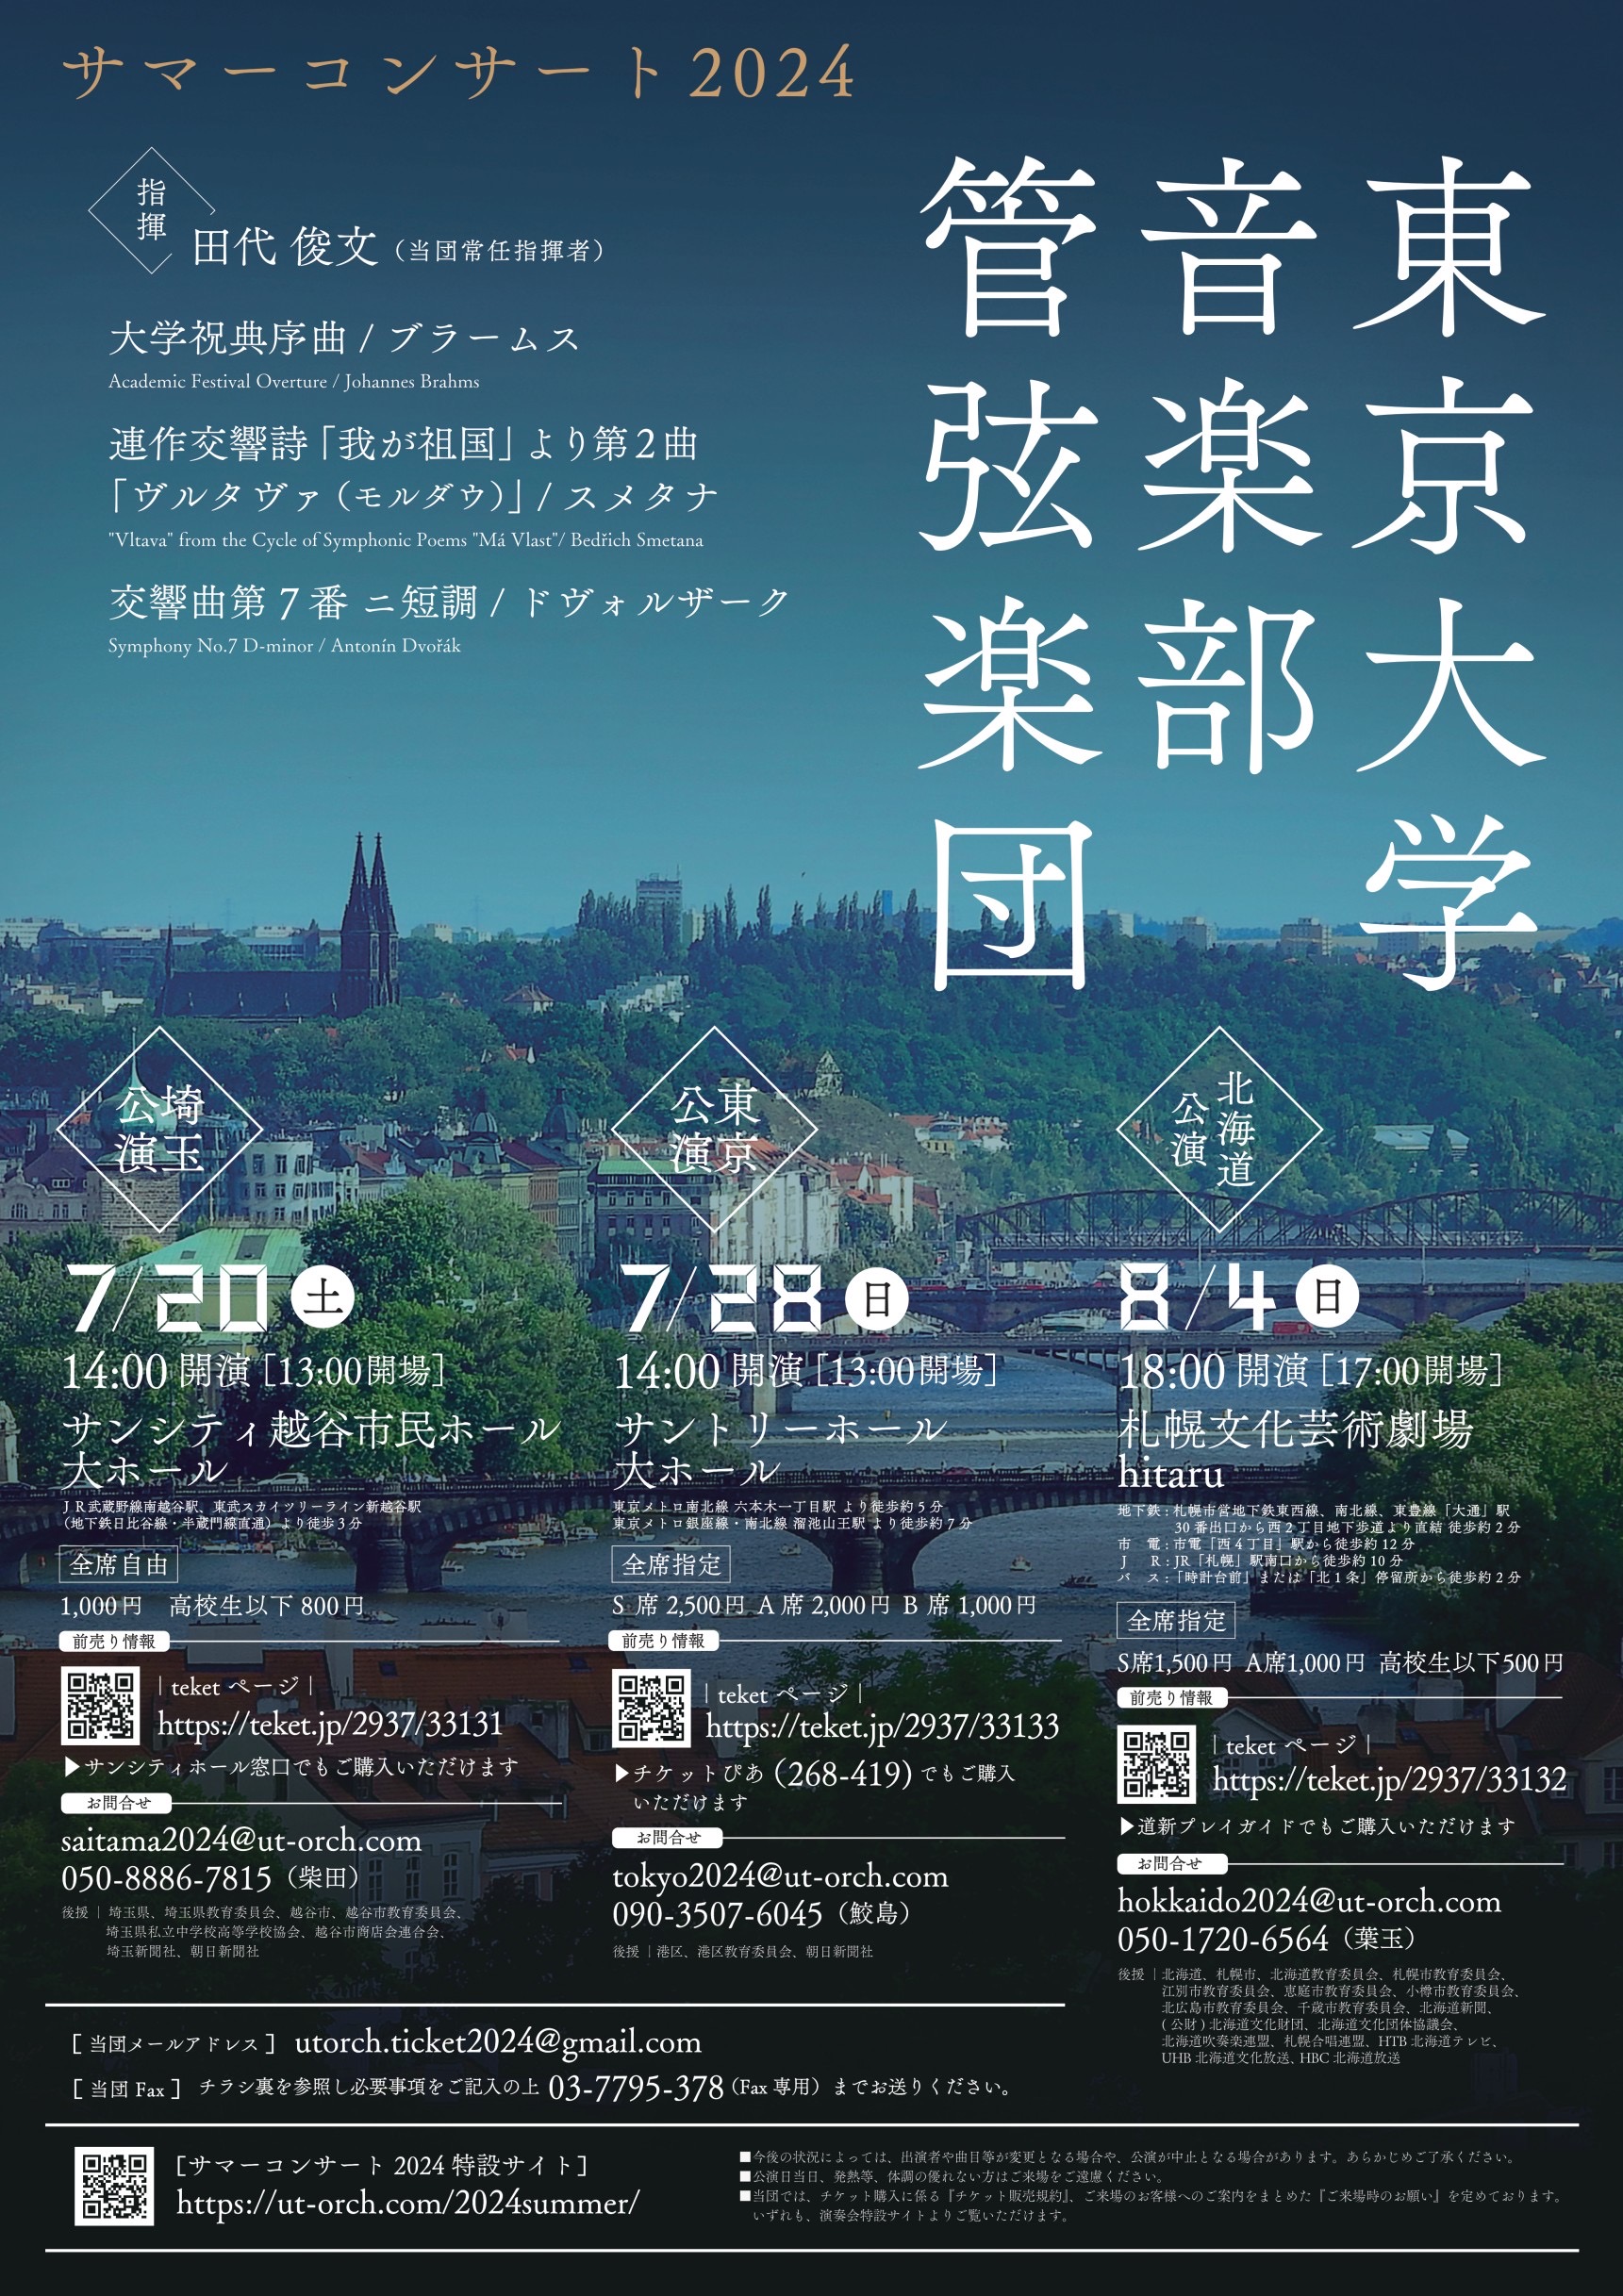 東京大学音楽部管弦楽団 サマーコンサート2024イメージ